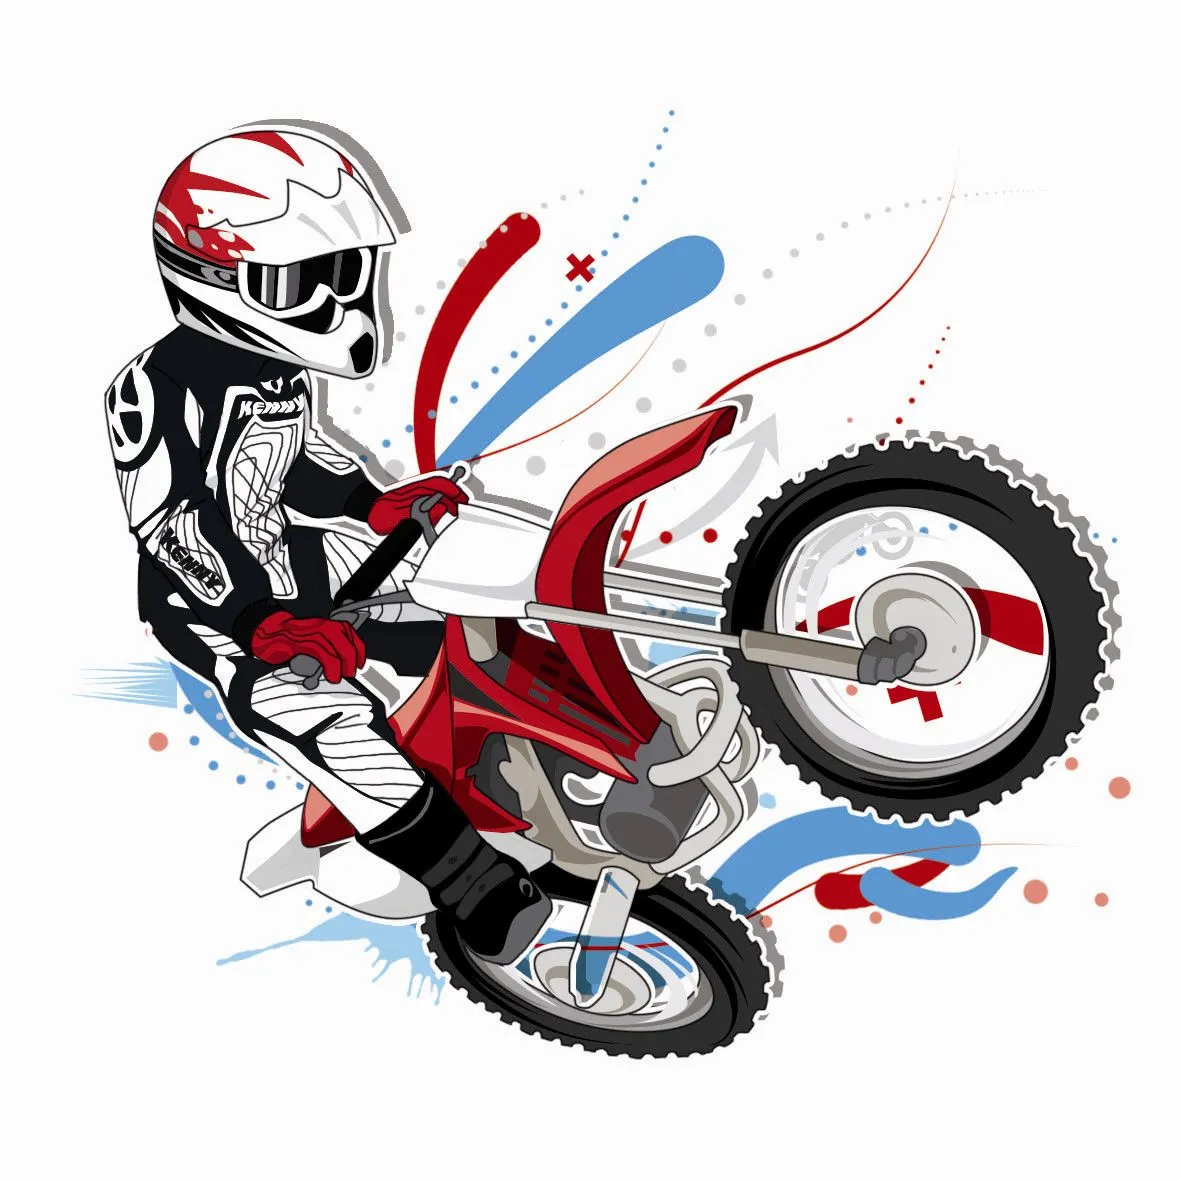 Caricaturas de motos - Imagui